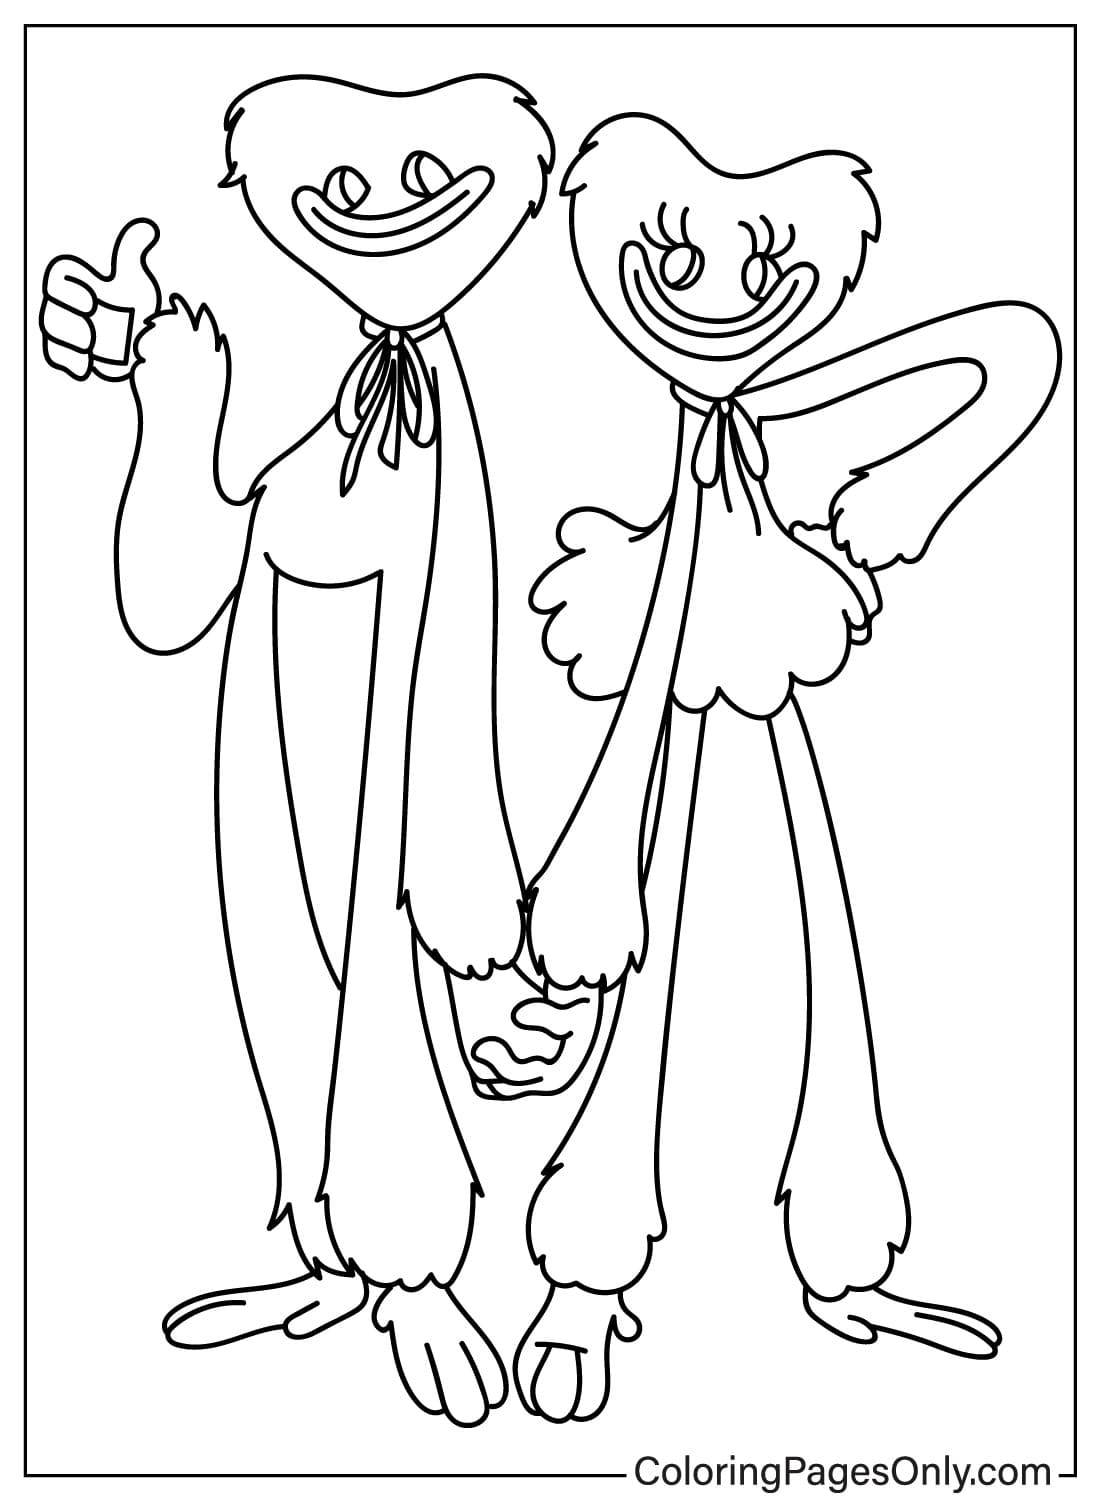 Página para colorear gratis de Huggy Wuggy y Kissy Missy de Poppy Playtime